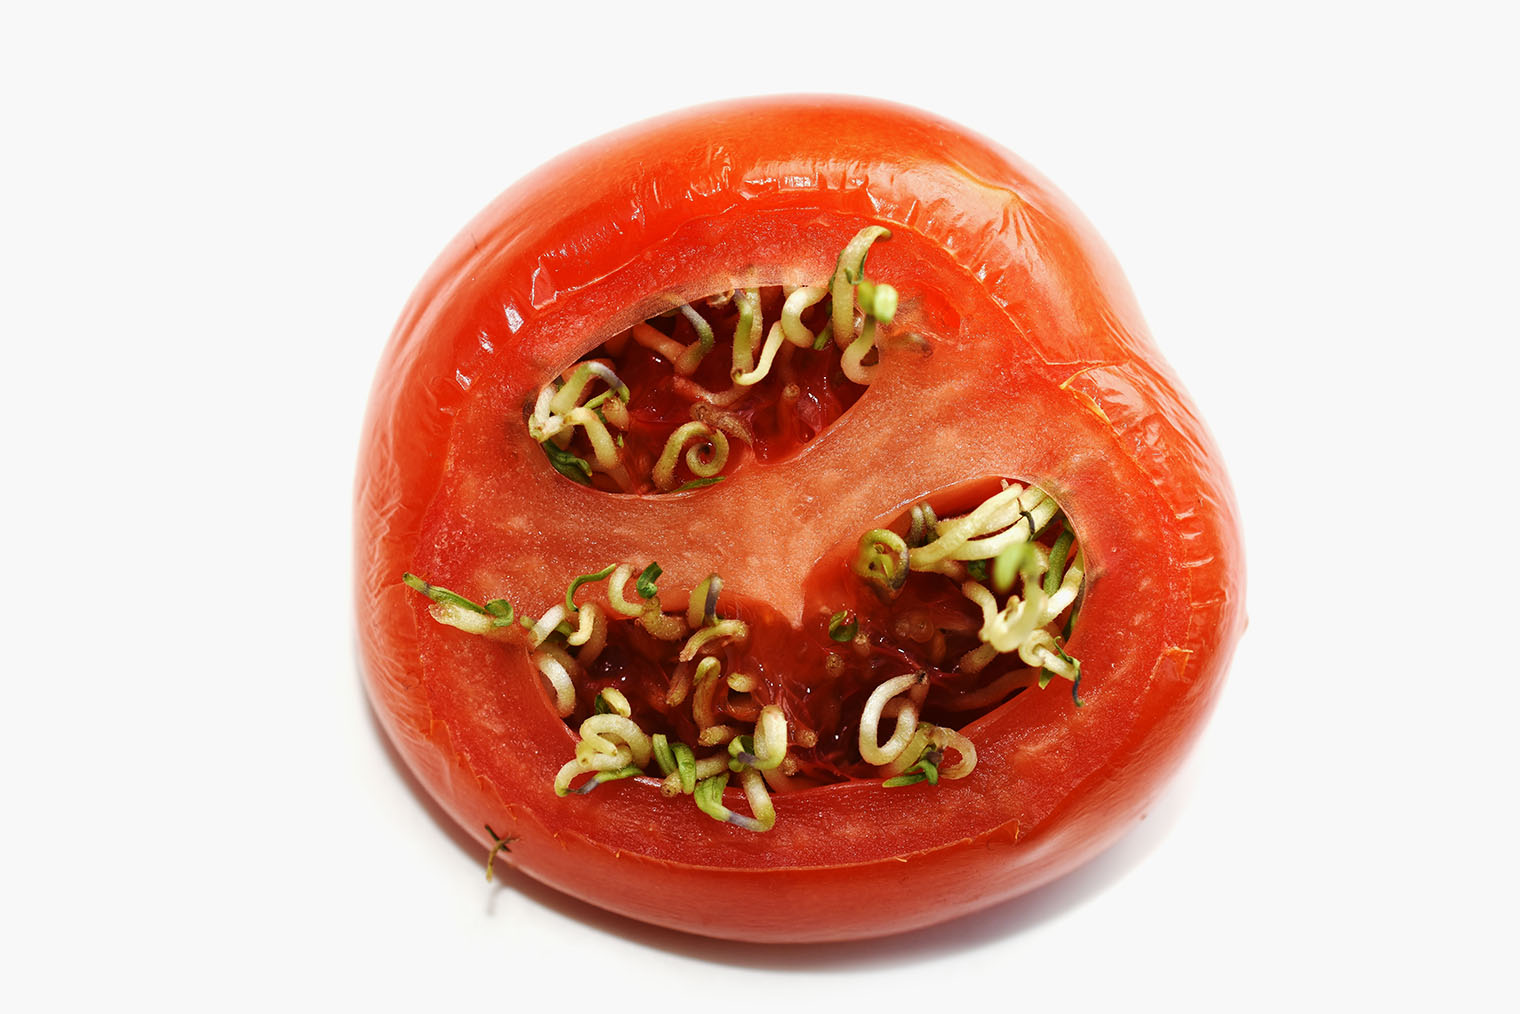 Я не пробовала такие помидоры, но по вкусу они должны отличаться, так как перезревшие плоды теряют массу и сахара. Фотография: HHelene / Shutterstock / FOTODOM